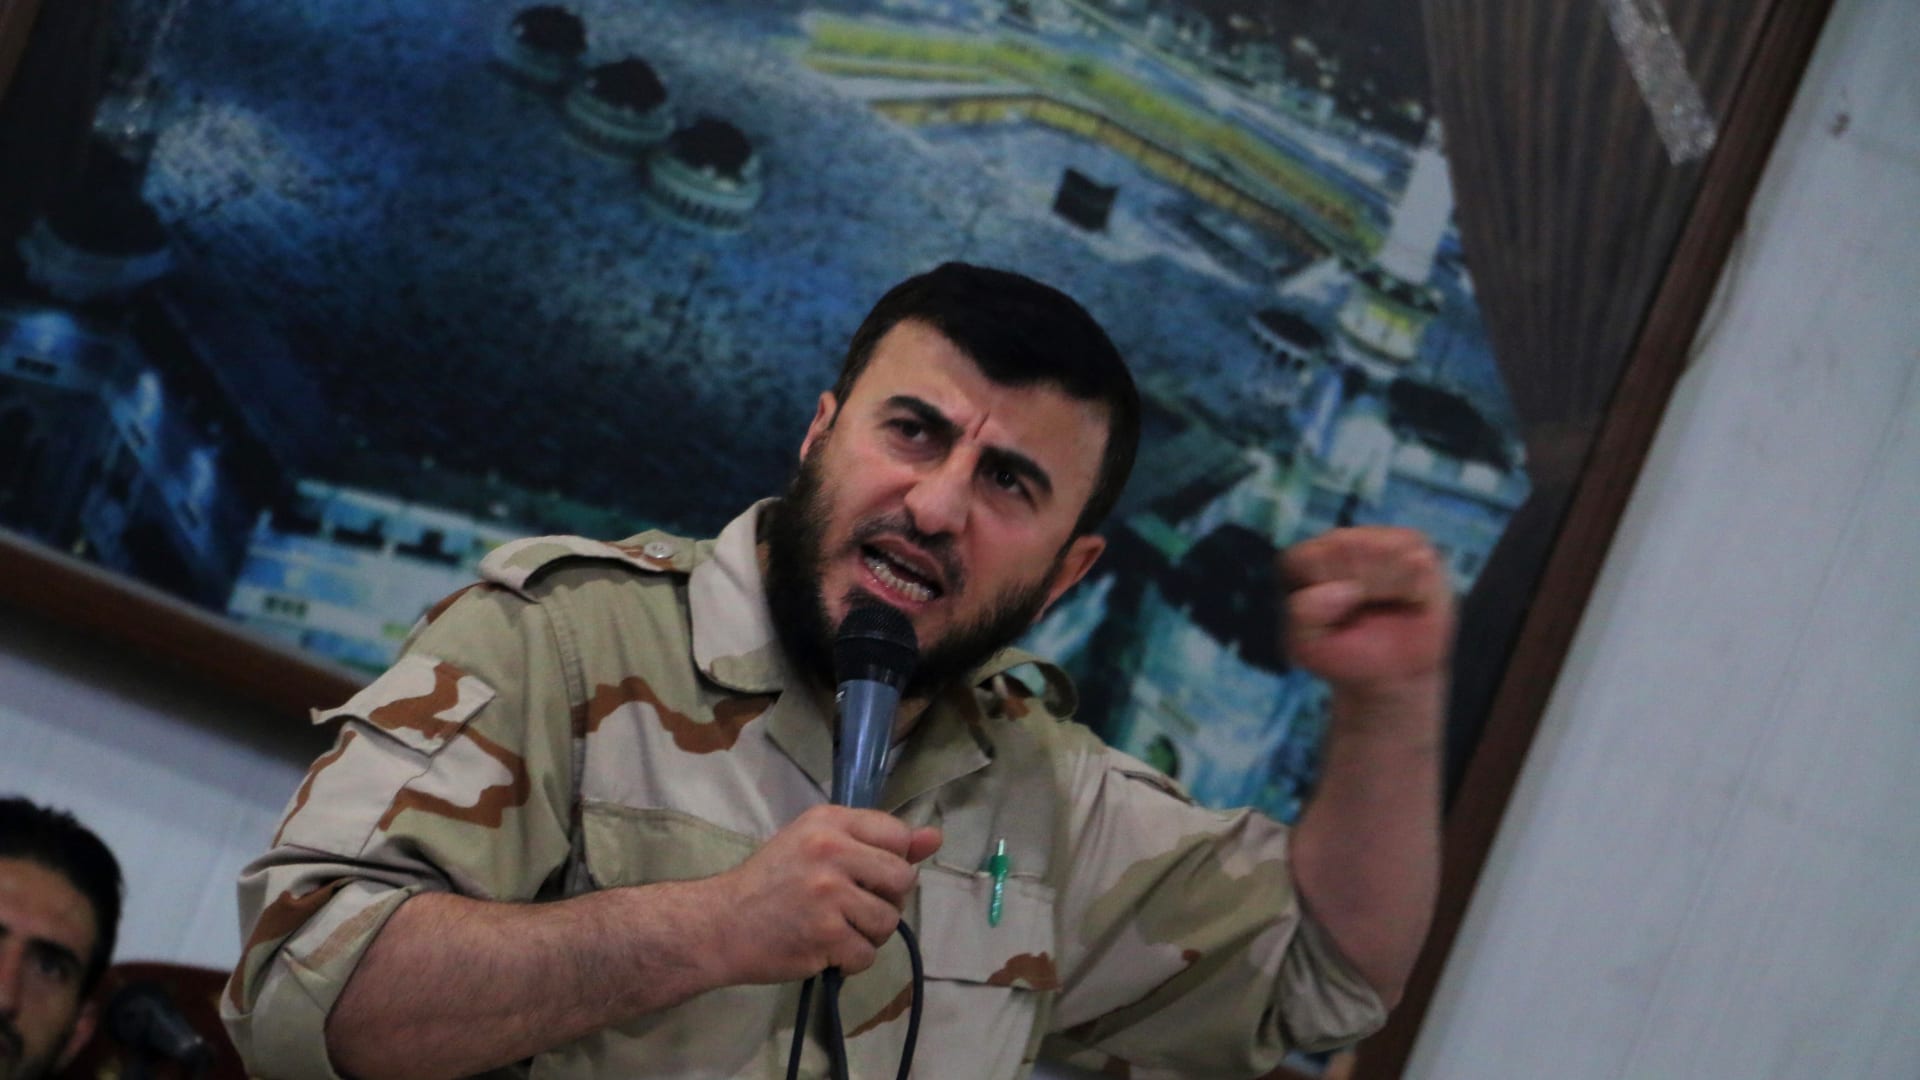 شاهد.. لحظة استهداف قائد "جيش الإسلام" في غارة جوية بسوريا